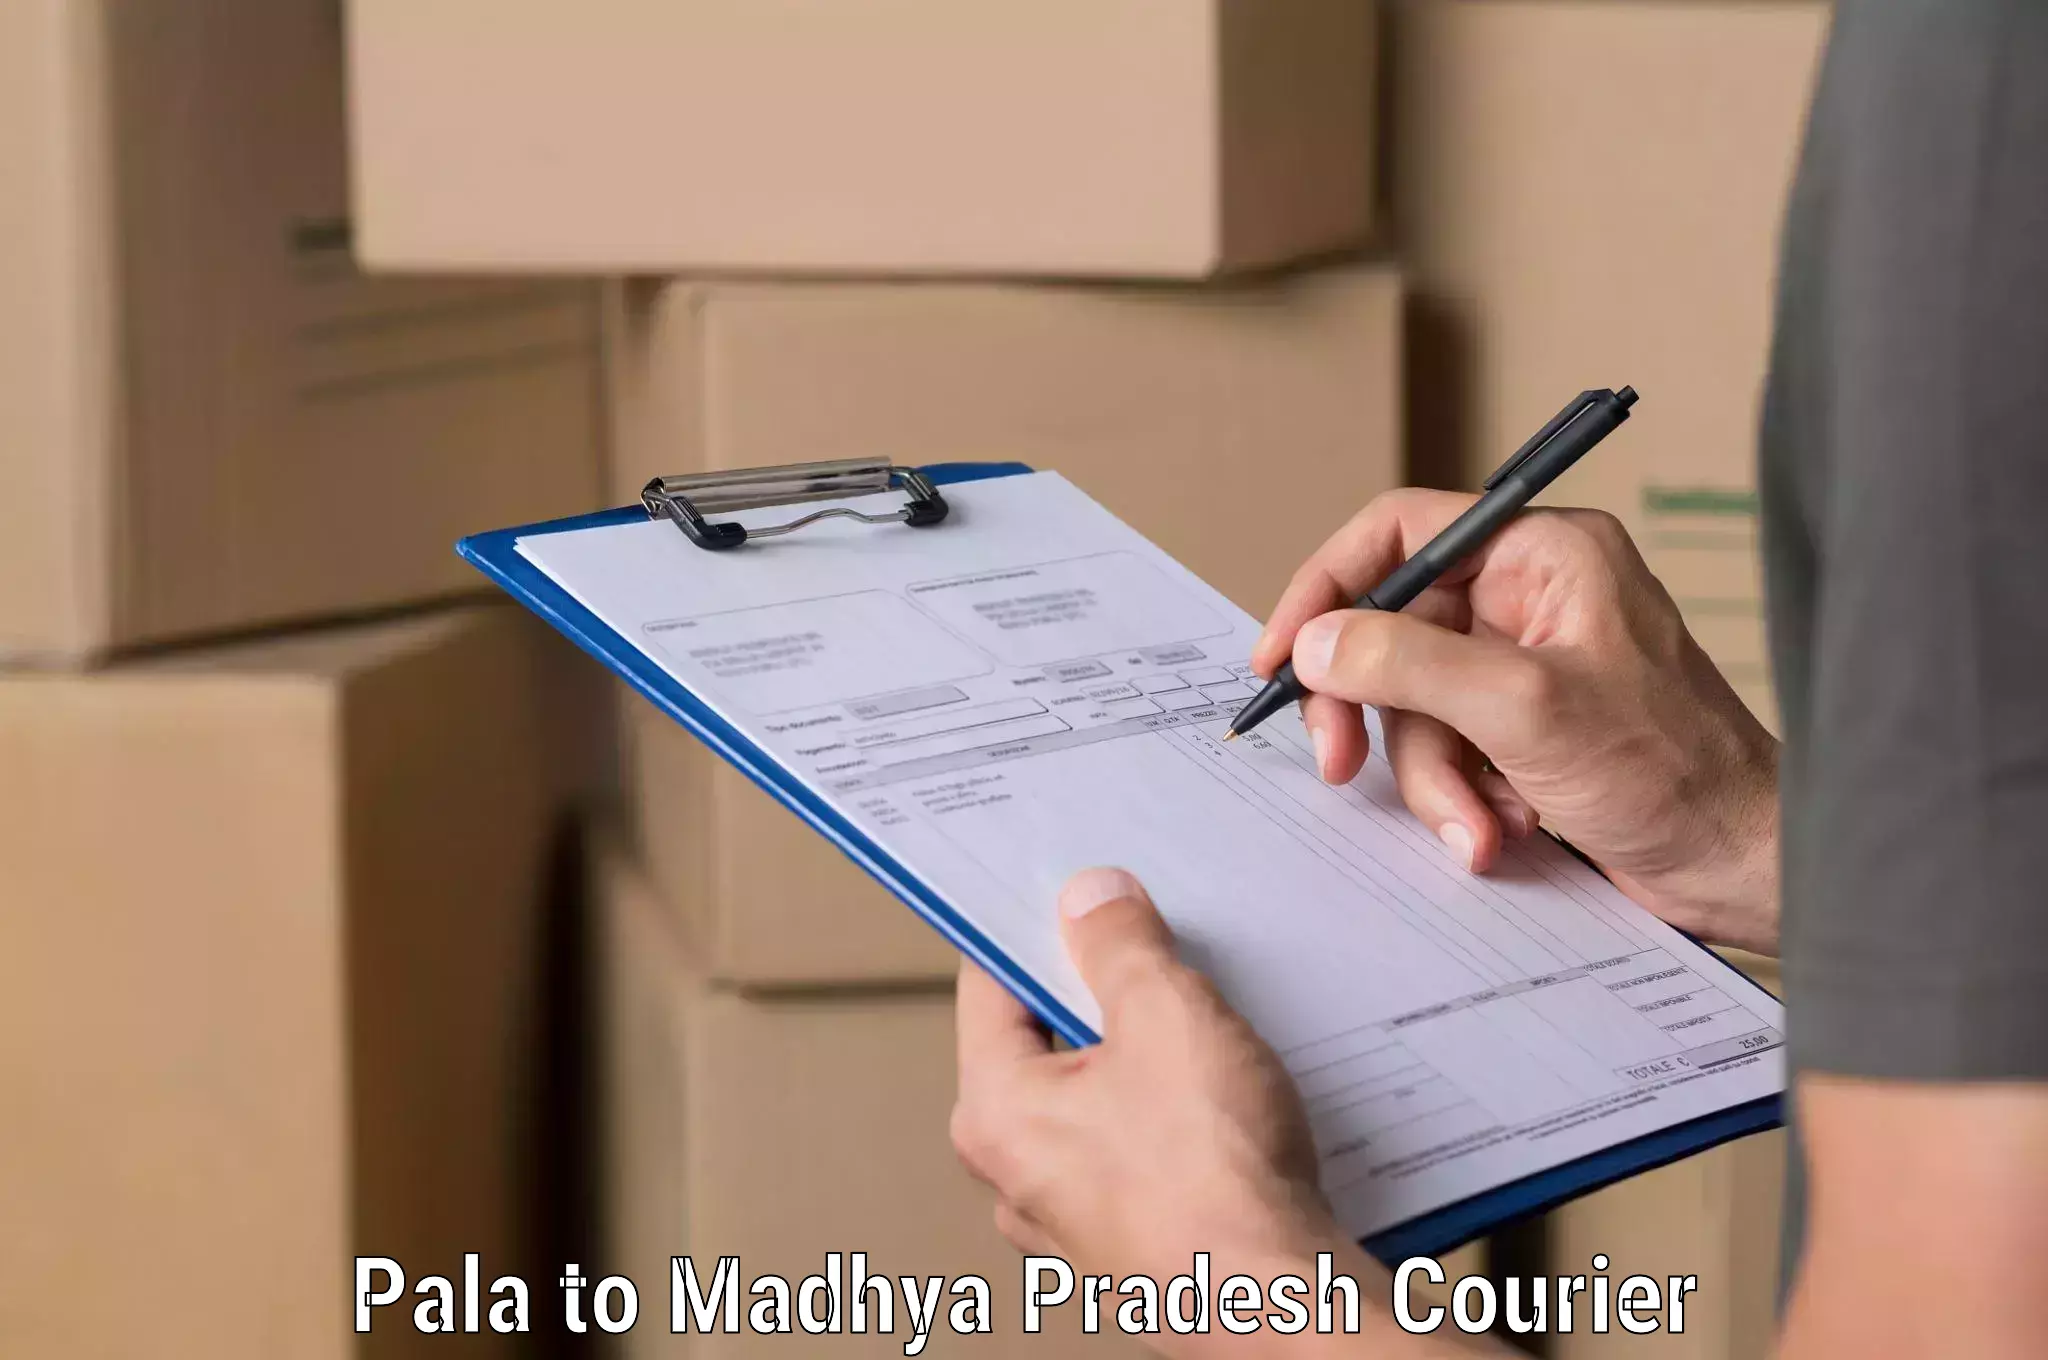 Courier service comparison Pala to Khategaon